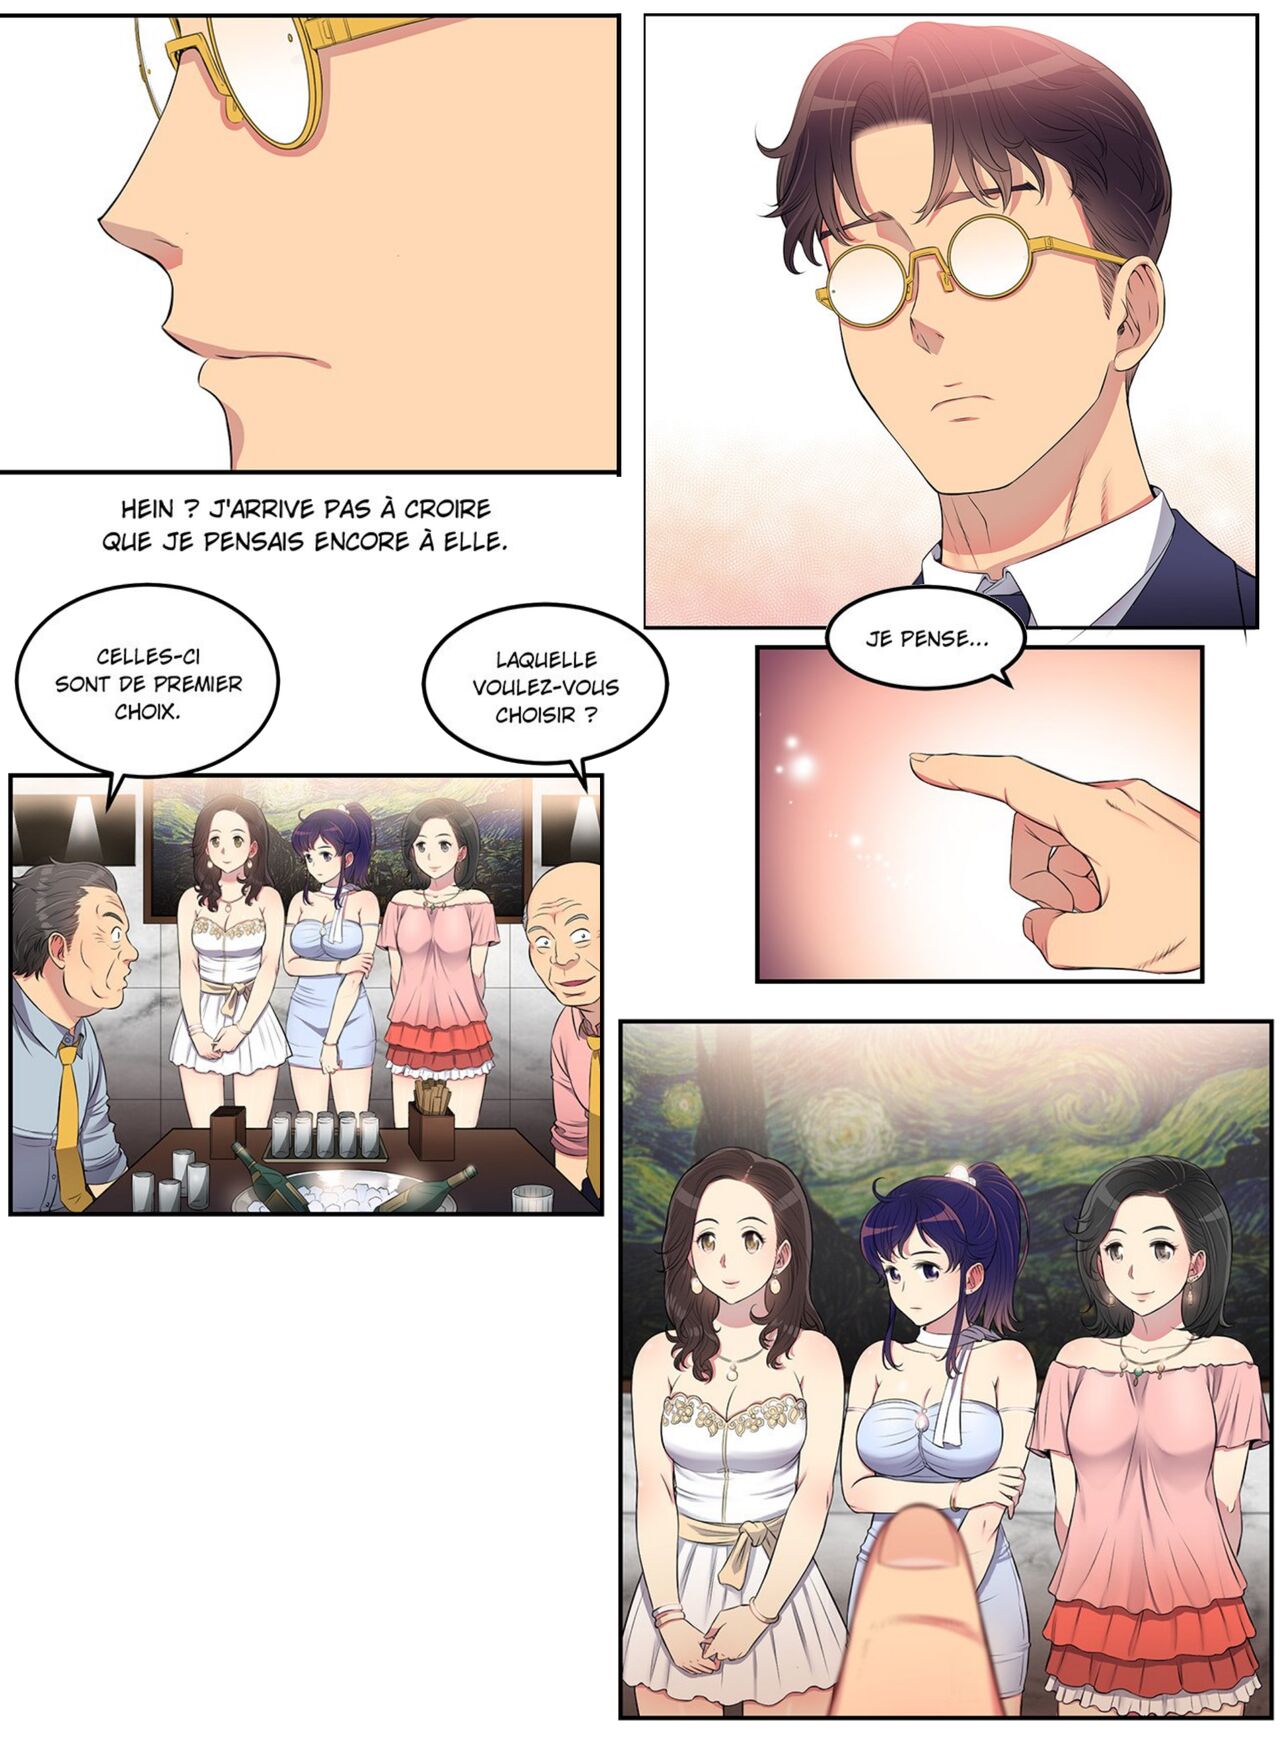 La double vie de Yuri numero d'image 111